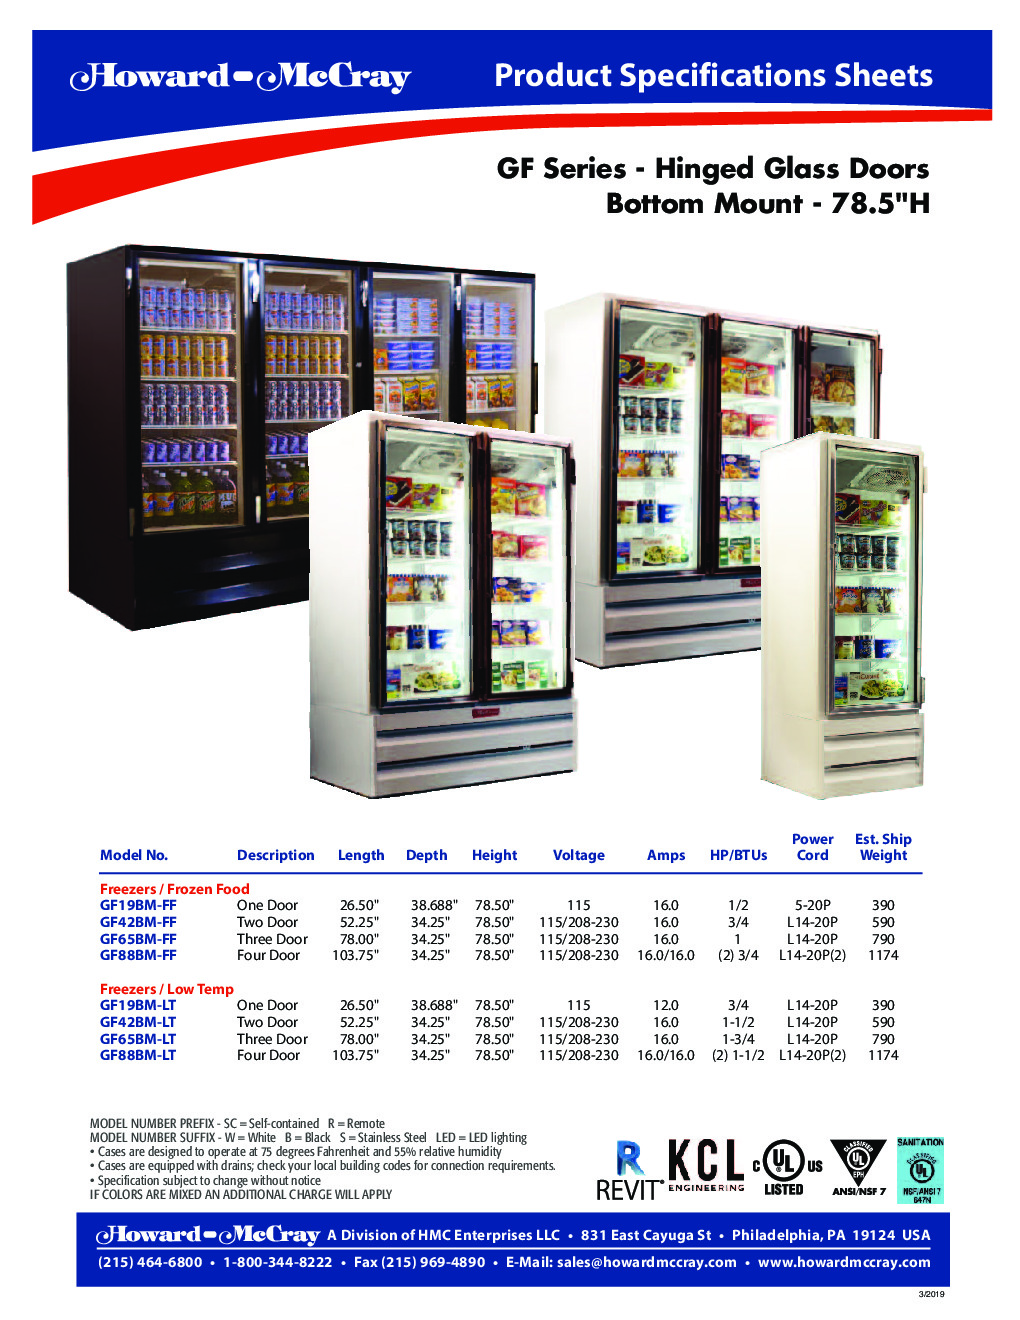 Howard-McCray GF42BM-S-LT Merchandiser Freezer